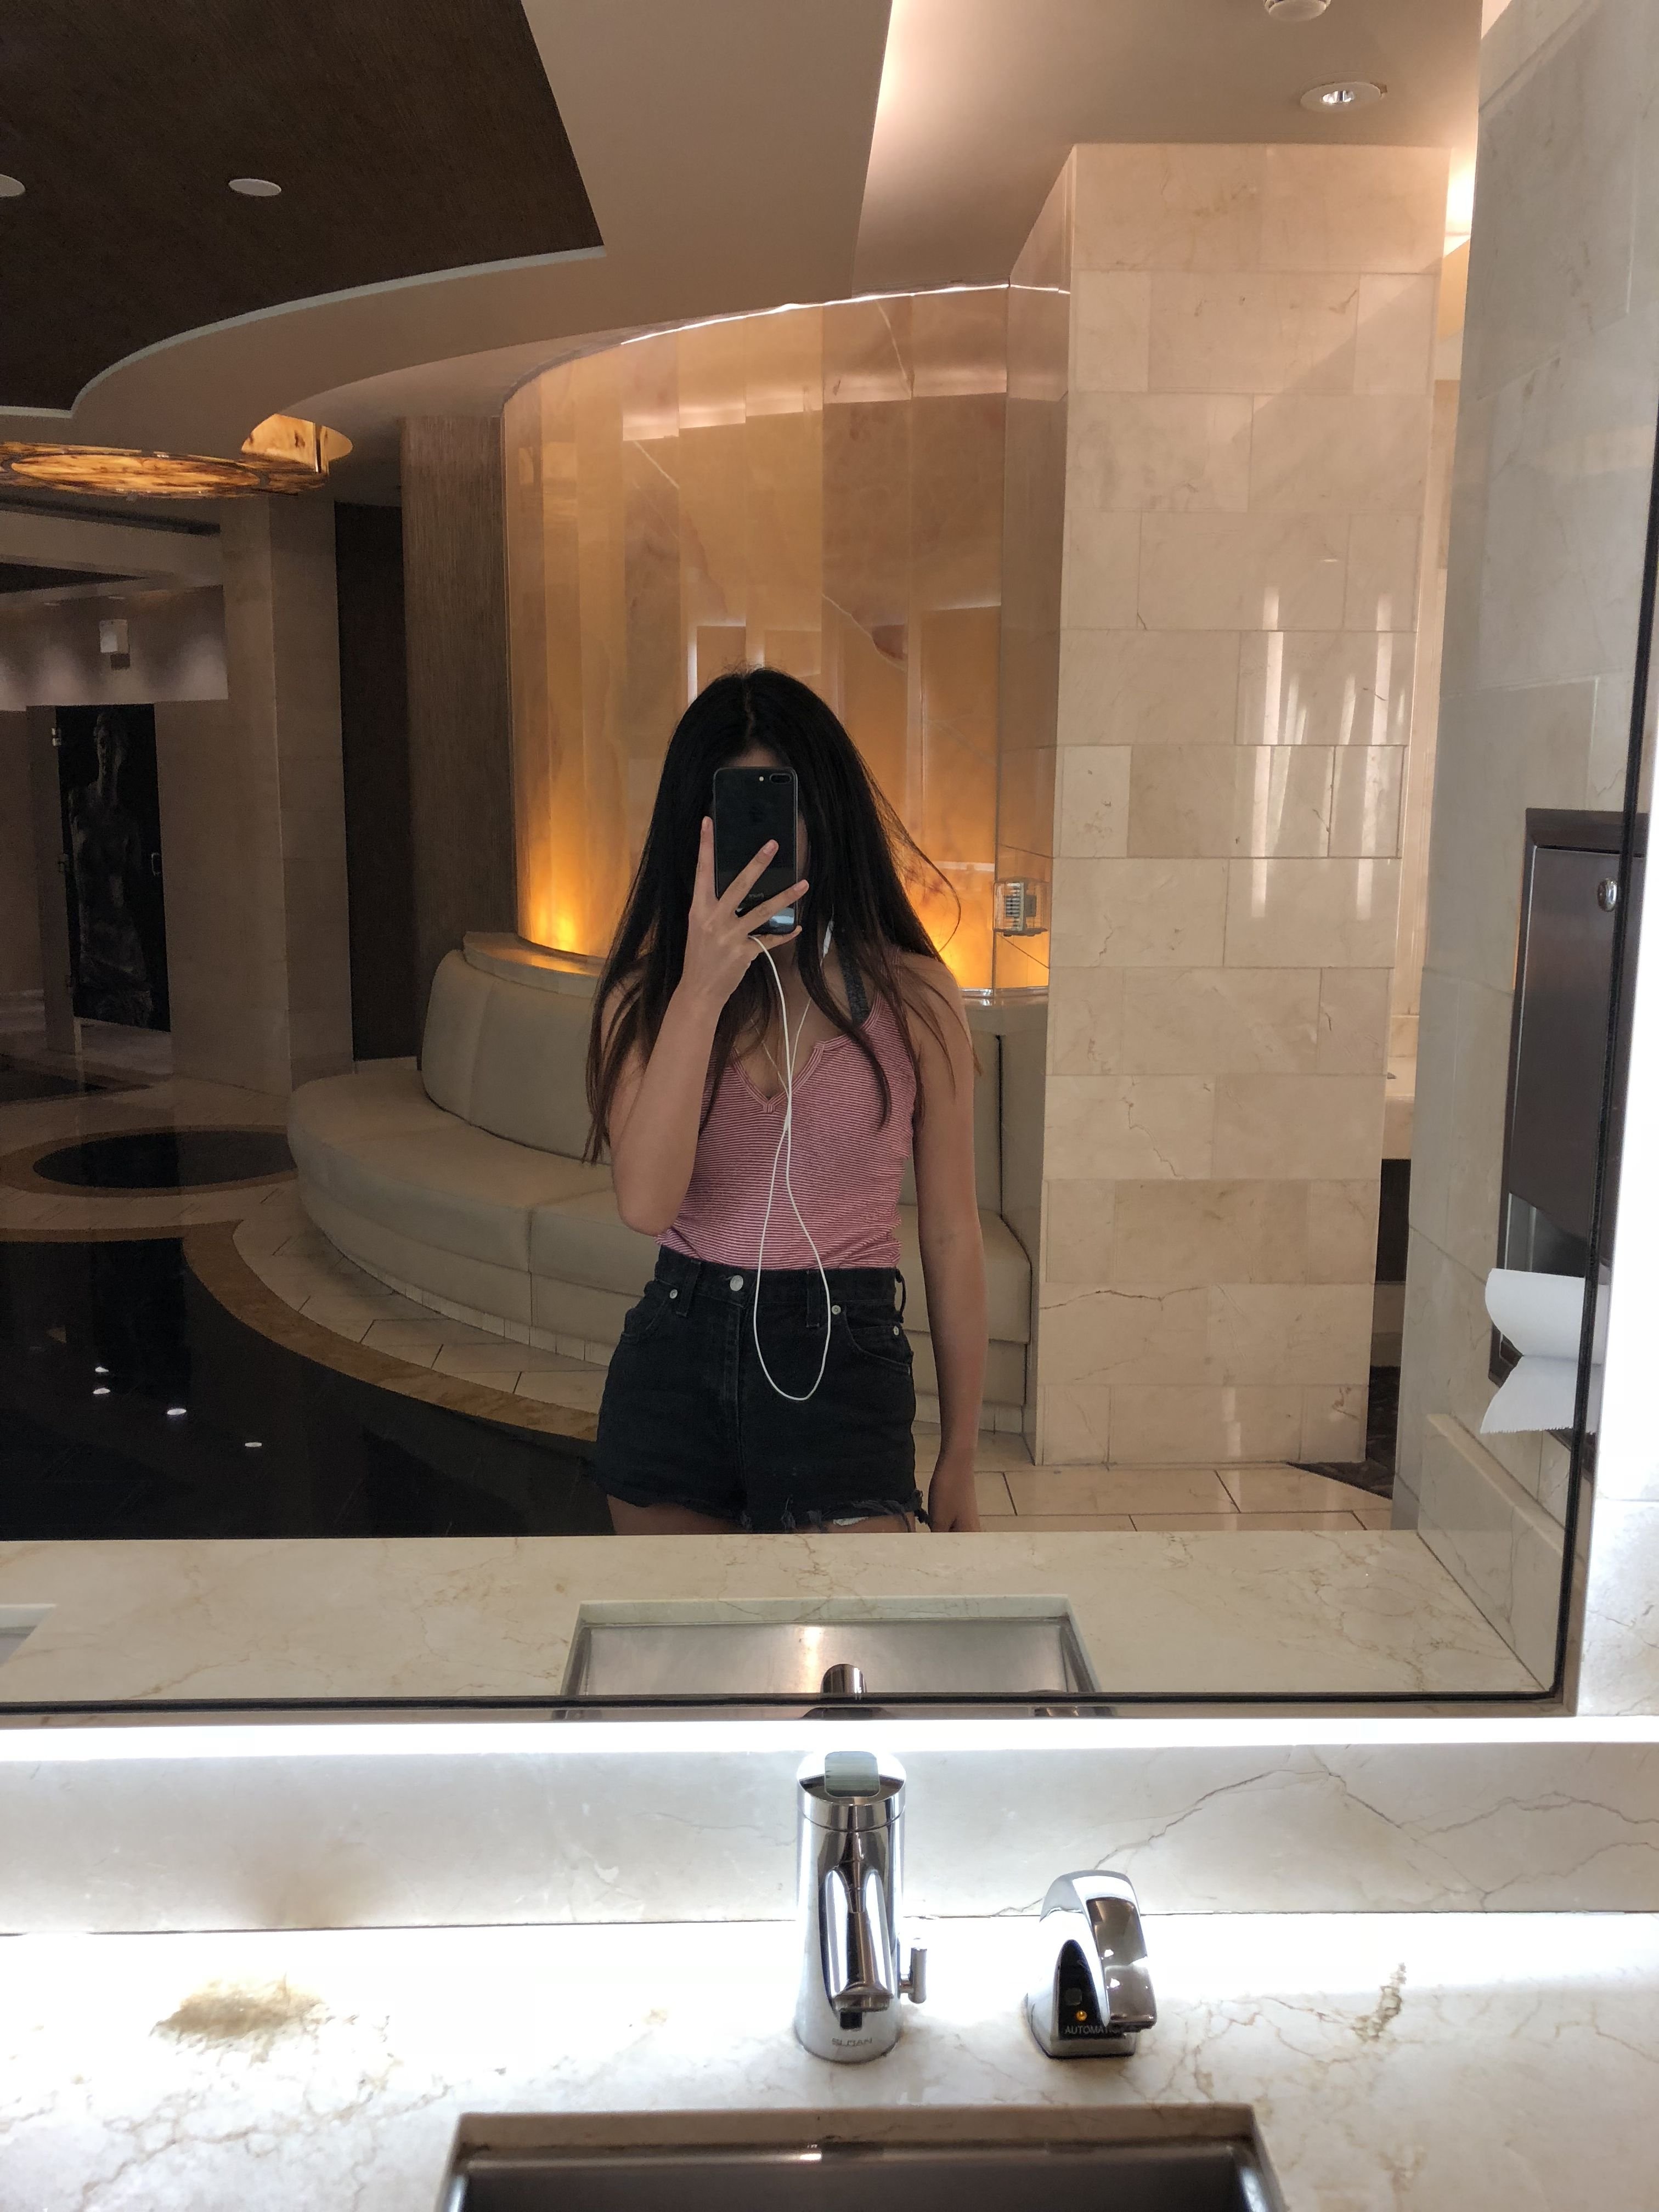 Фото девушки в зеркале без лица в ванной